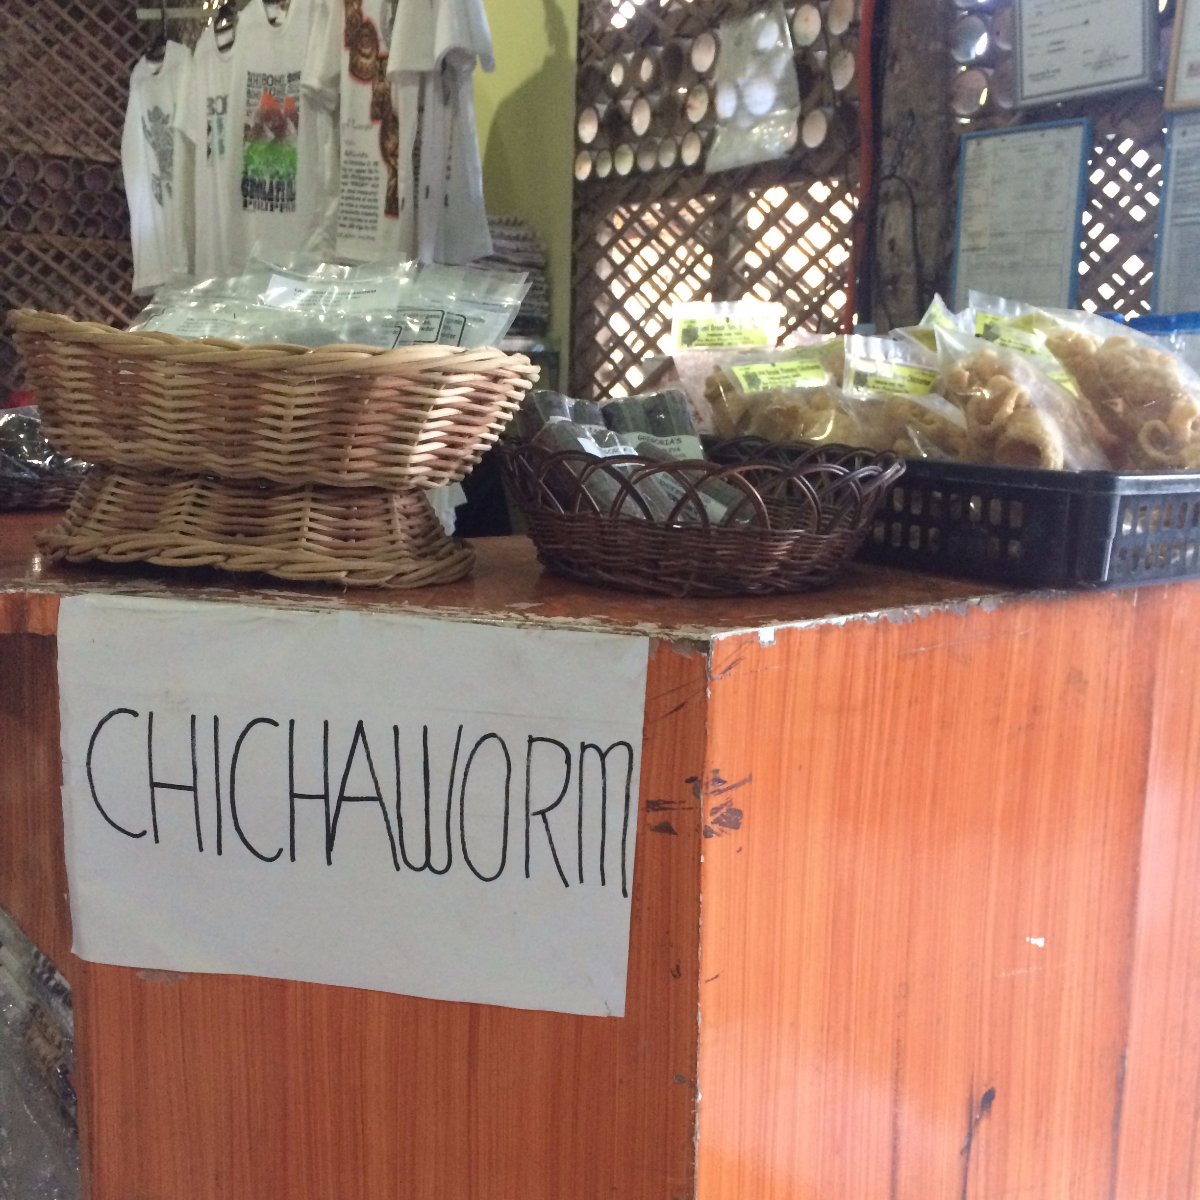 Chichaworm, Travel, Explore